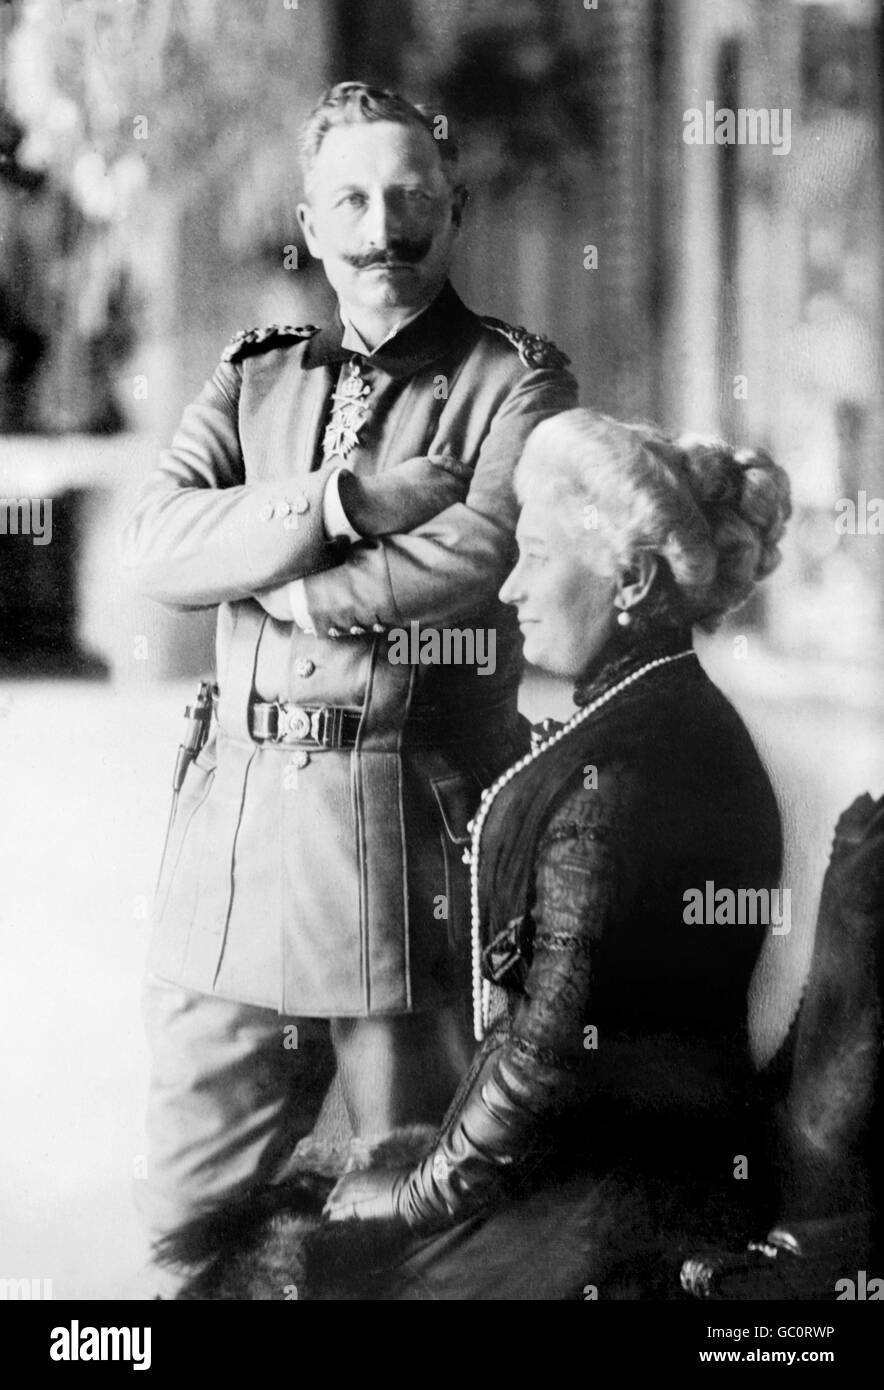 Porträt von Kaiser Wilhelm II (1859-1941), Kaiser von Deutschland und König von Preußen und seine Frau, Kaiserin Augusta Victoria. Foto von Bain News Service, c.1910-1915. Stockfoto